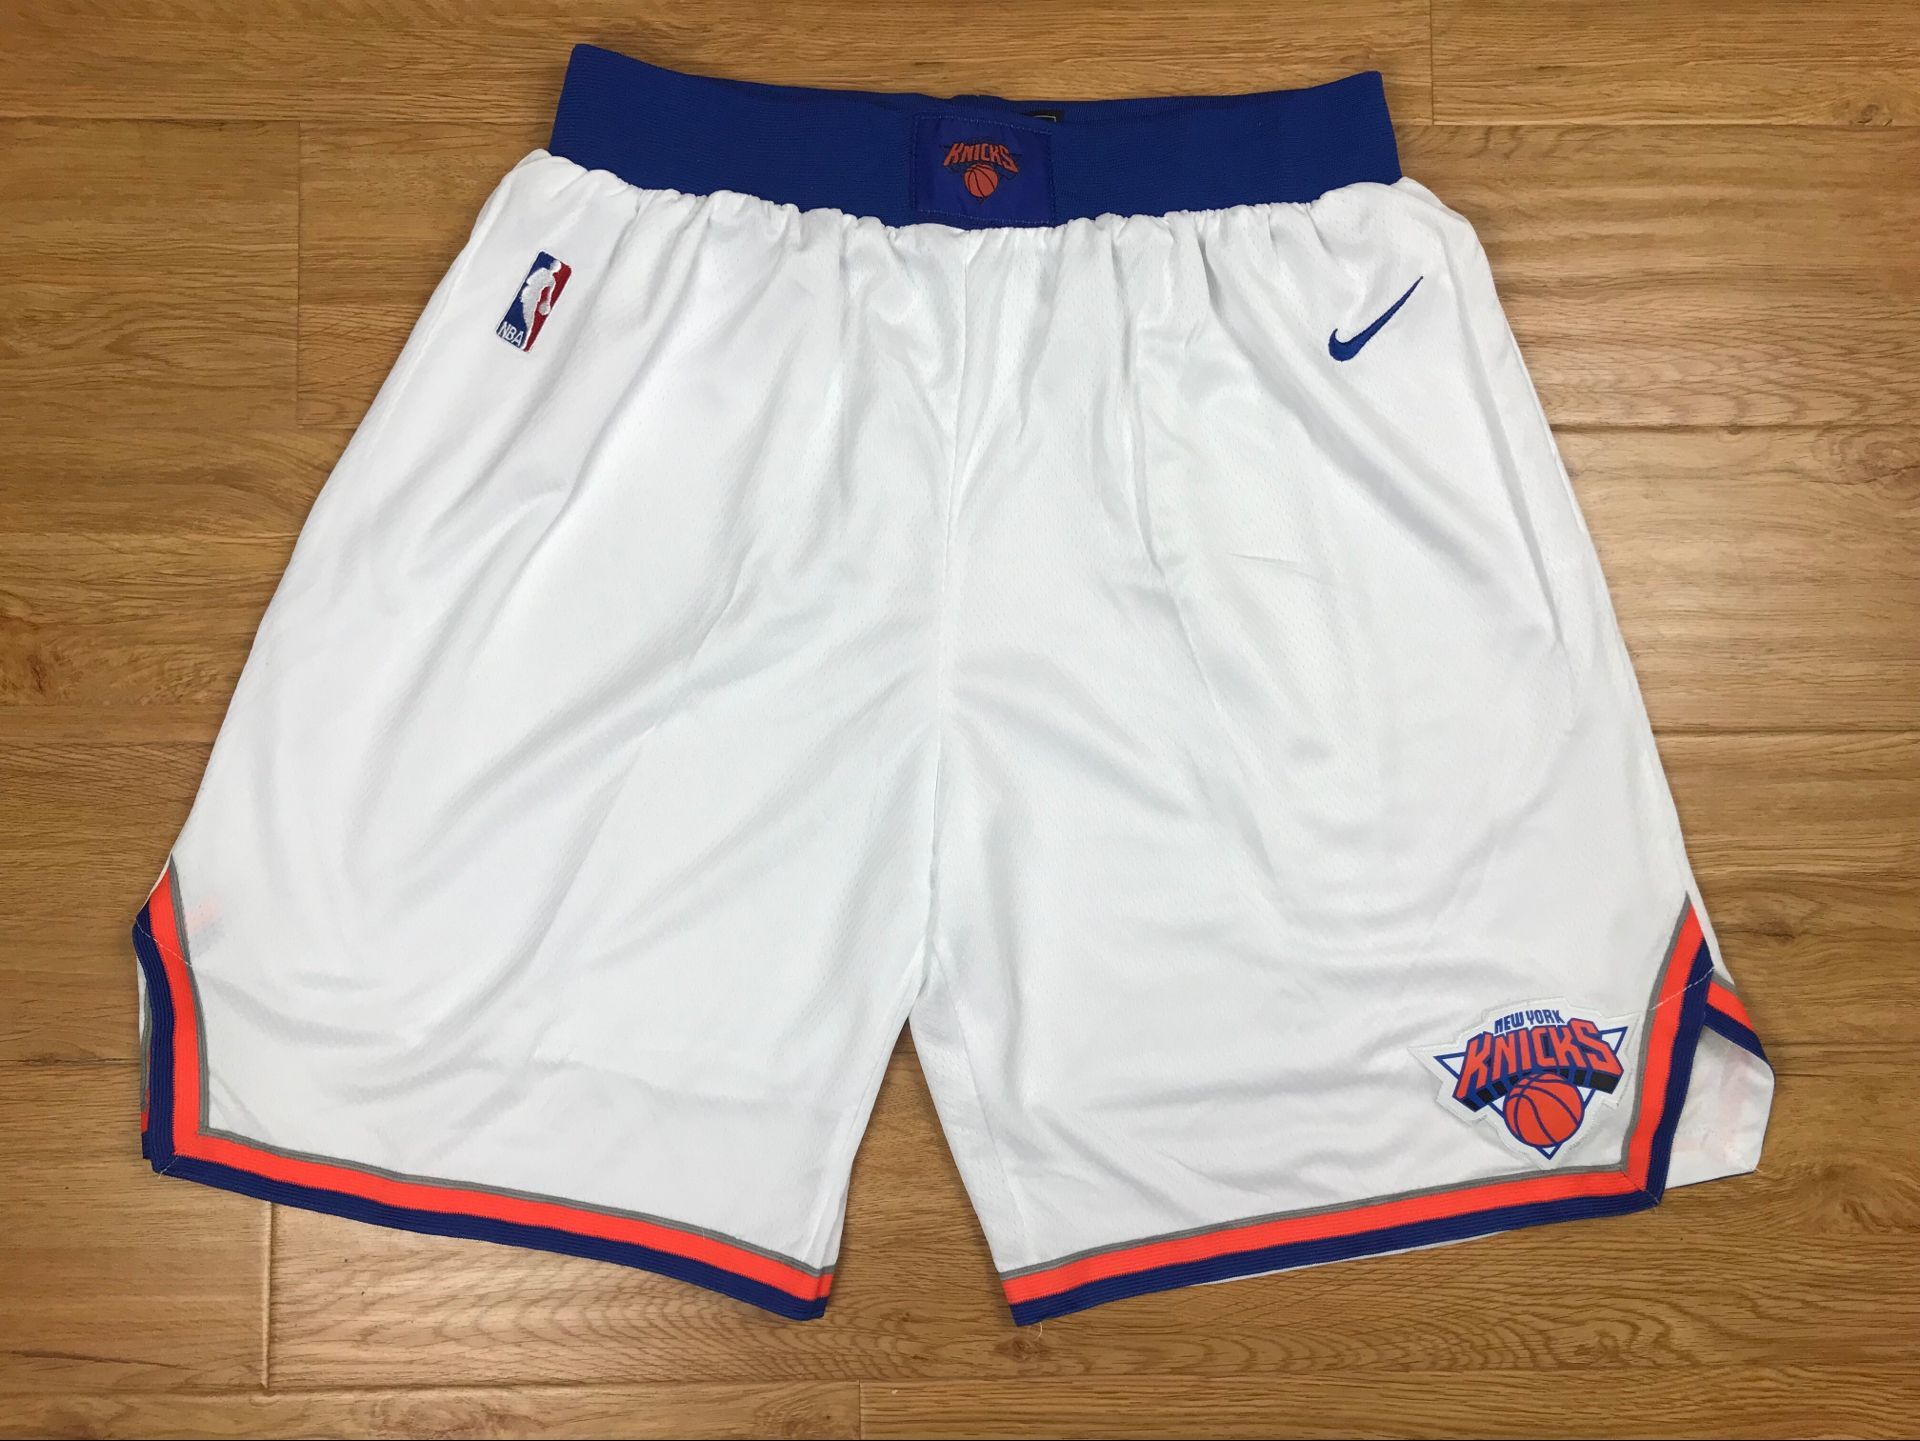 Knicks White Nike Authentic Shorts